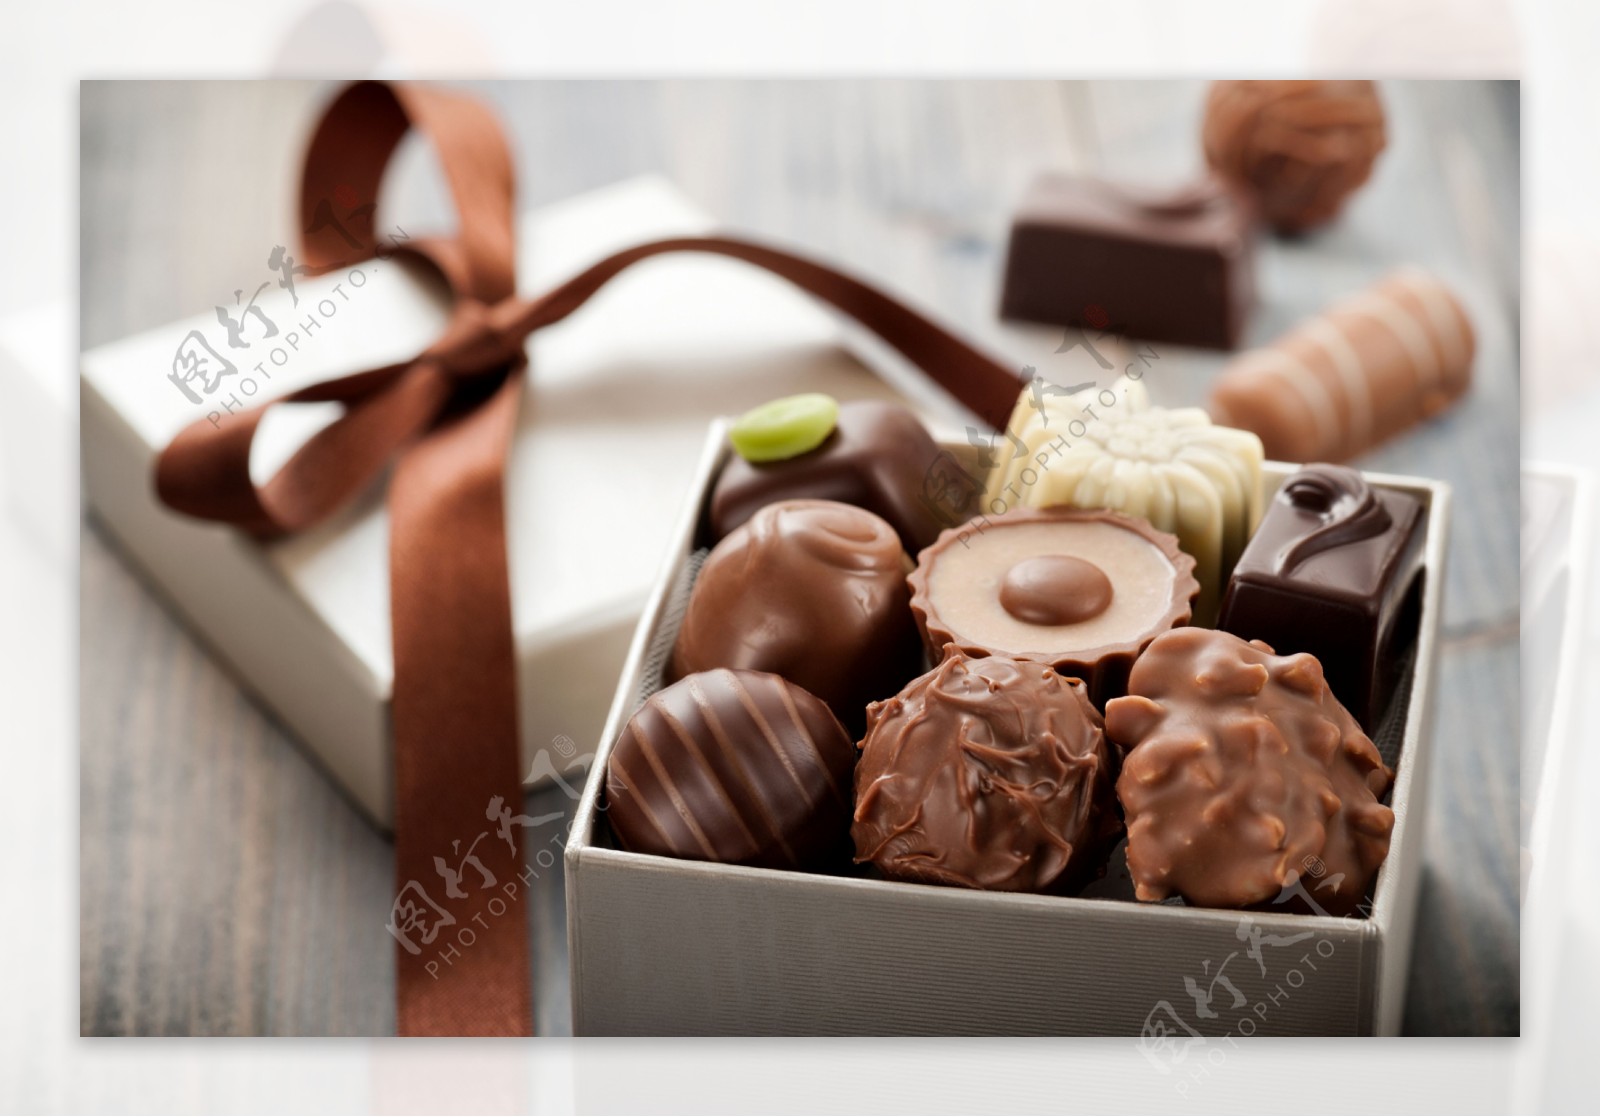 巧克力礼盒图片